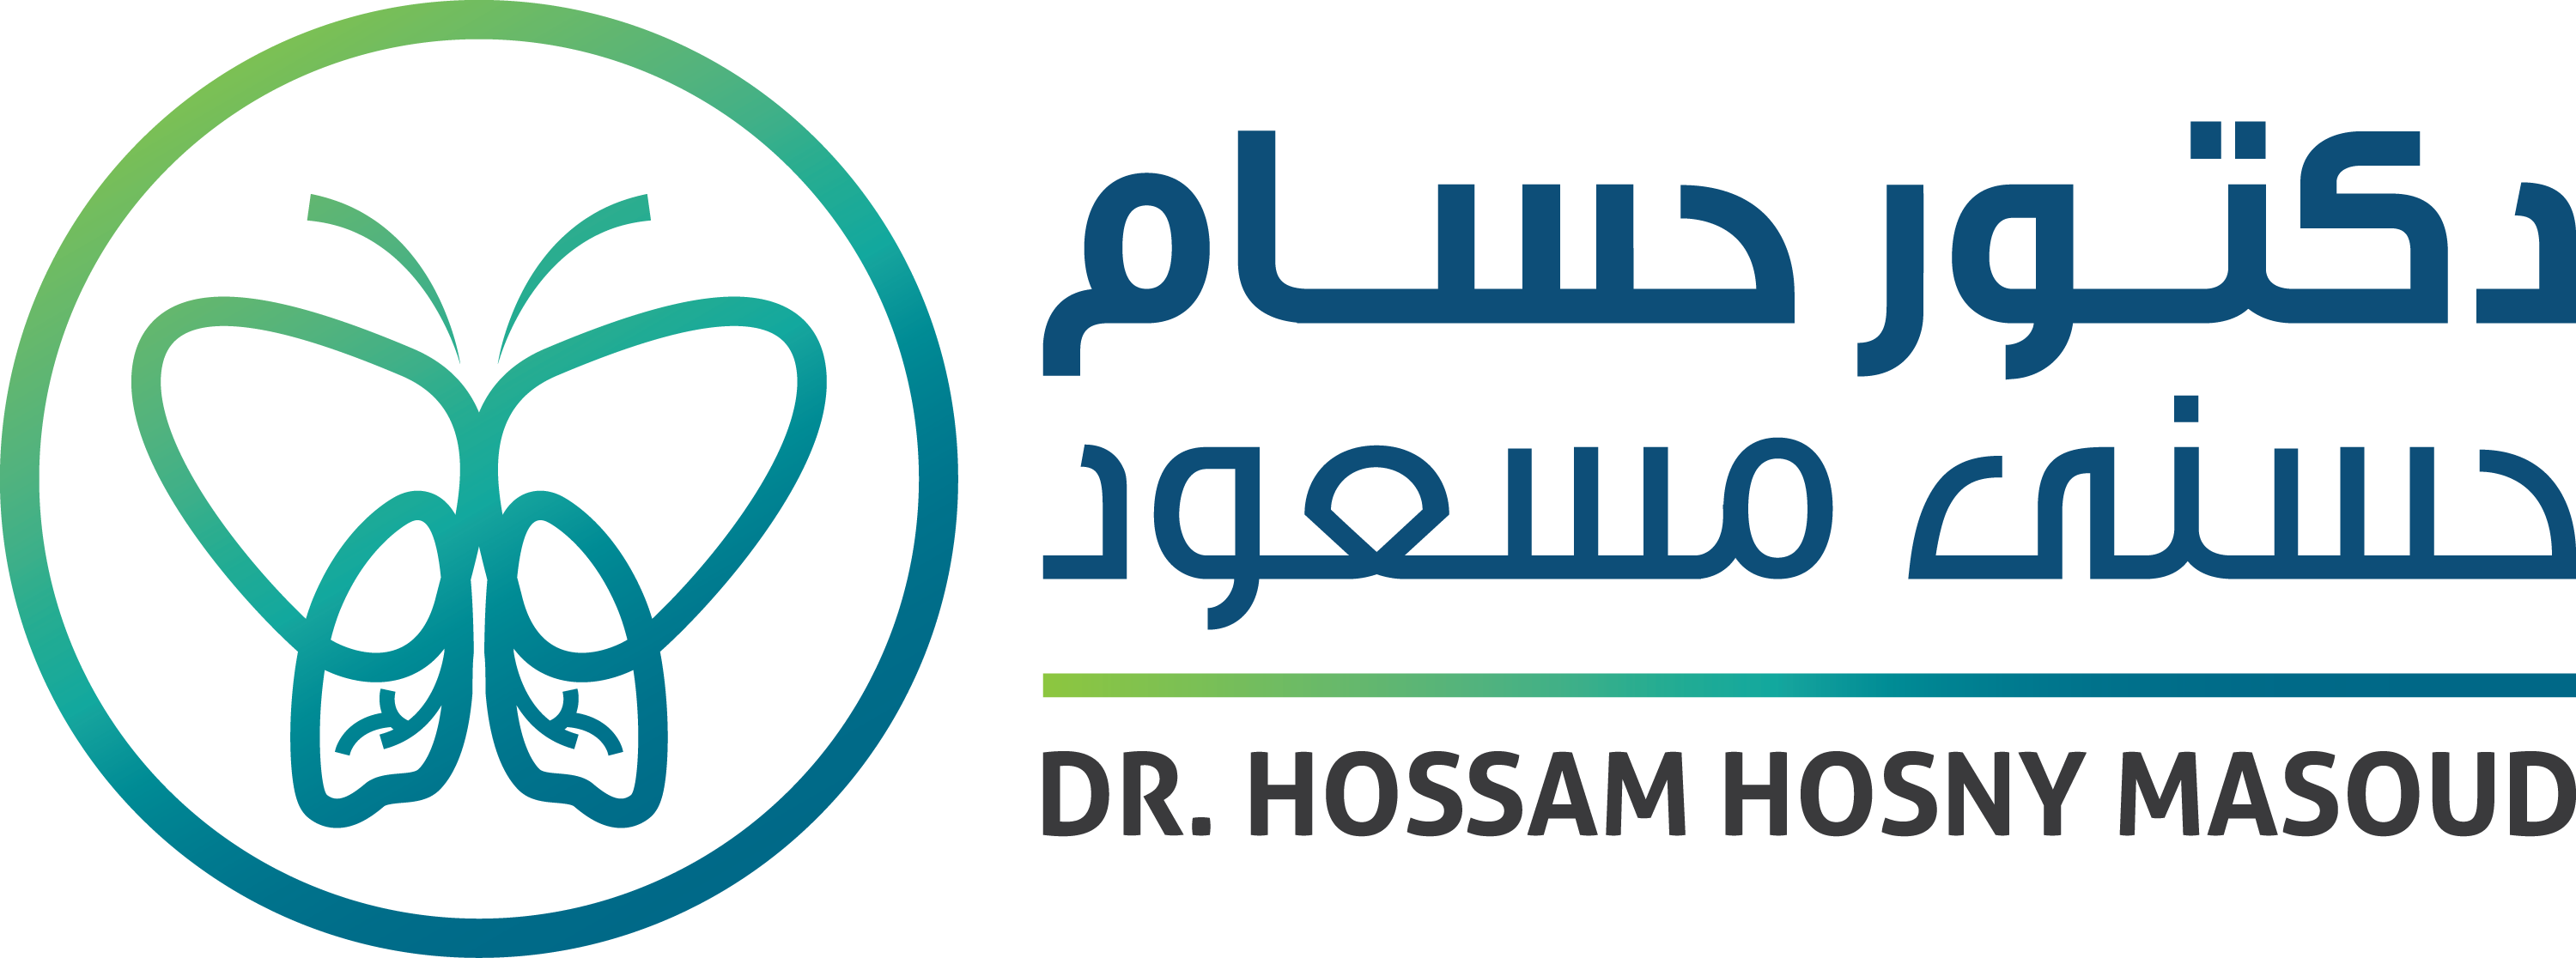 Dr. Hossam Hosny